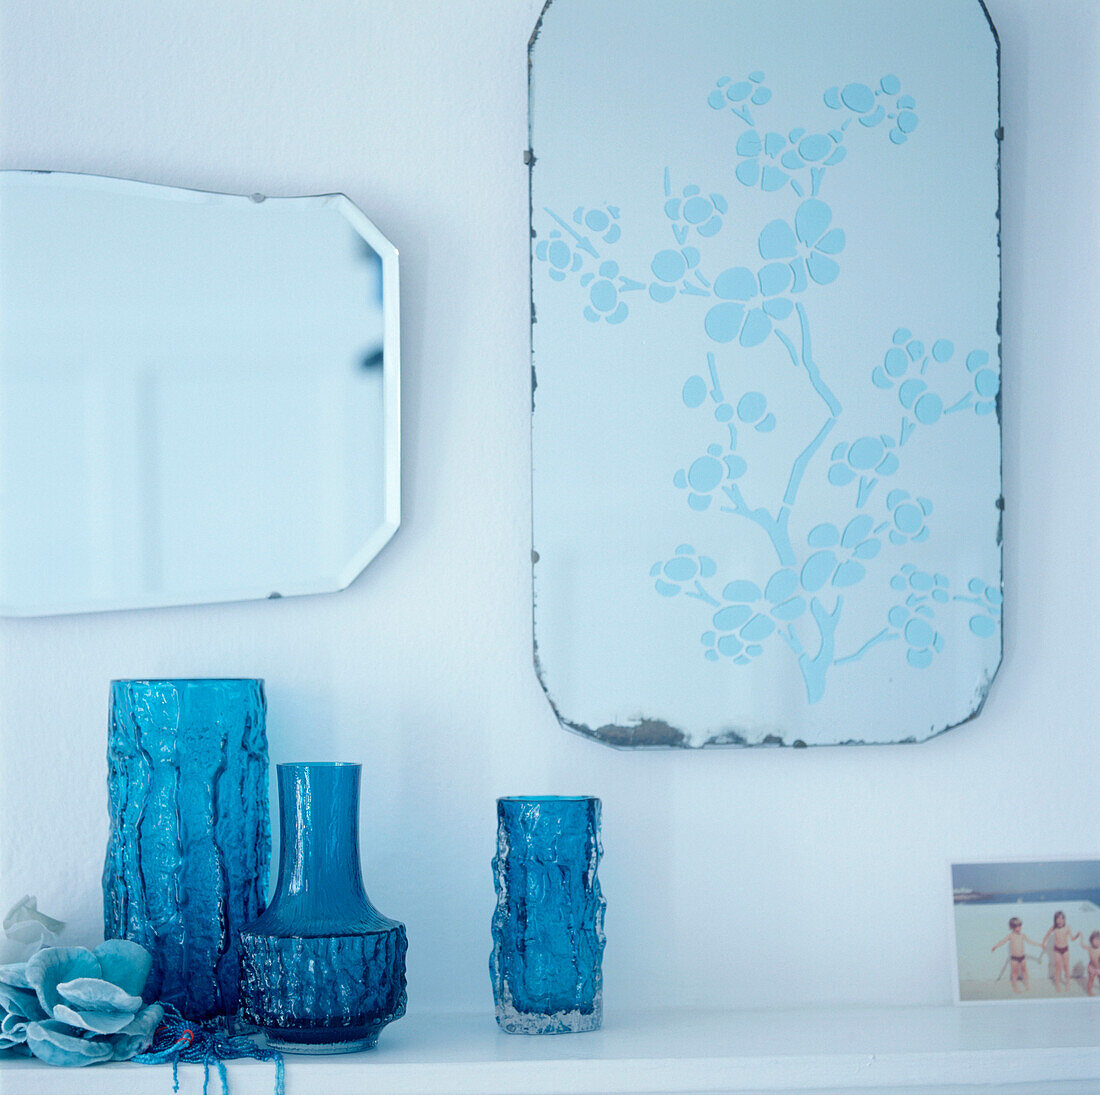 Detail von türkisblauen Glasvasen auf einem Regal mit Spiegeln an der Wand